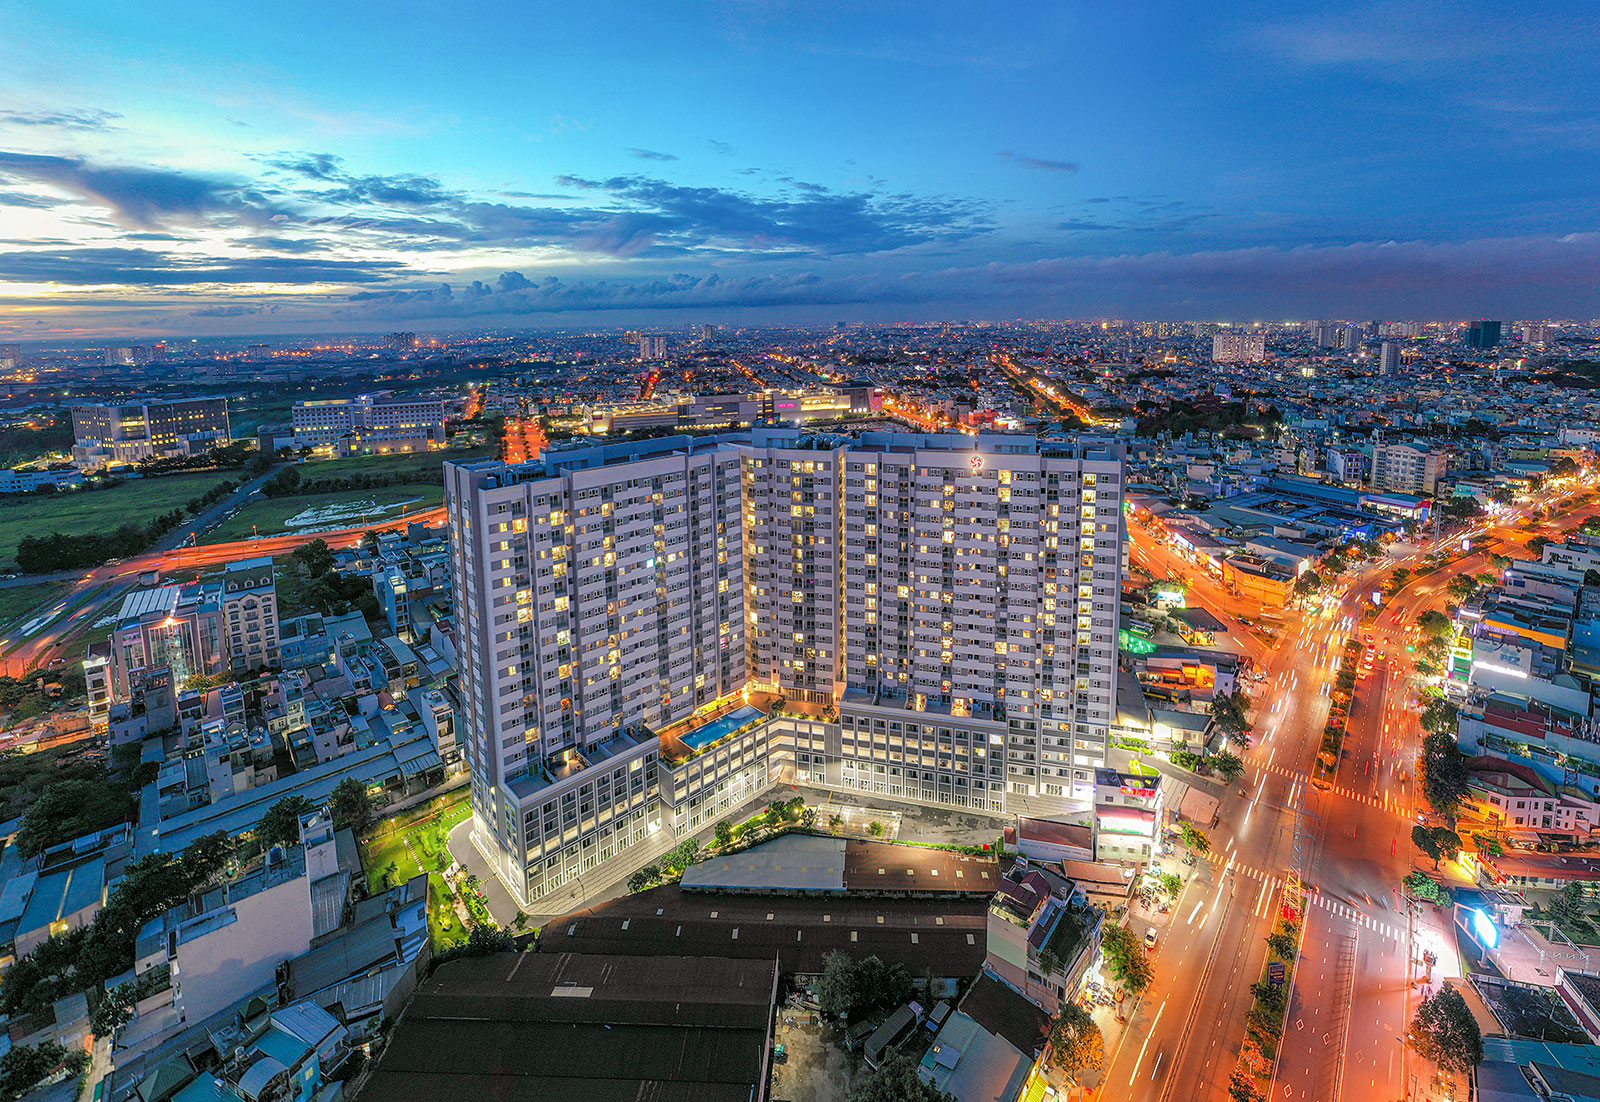 Dự án căn hộ cao cấp Moonlight Boulevard nằm trong khu dân cư hiện hữu tại phường An Lạc A, quận Bình Tân, TP.HCM